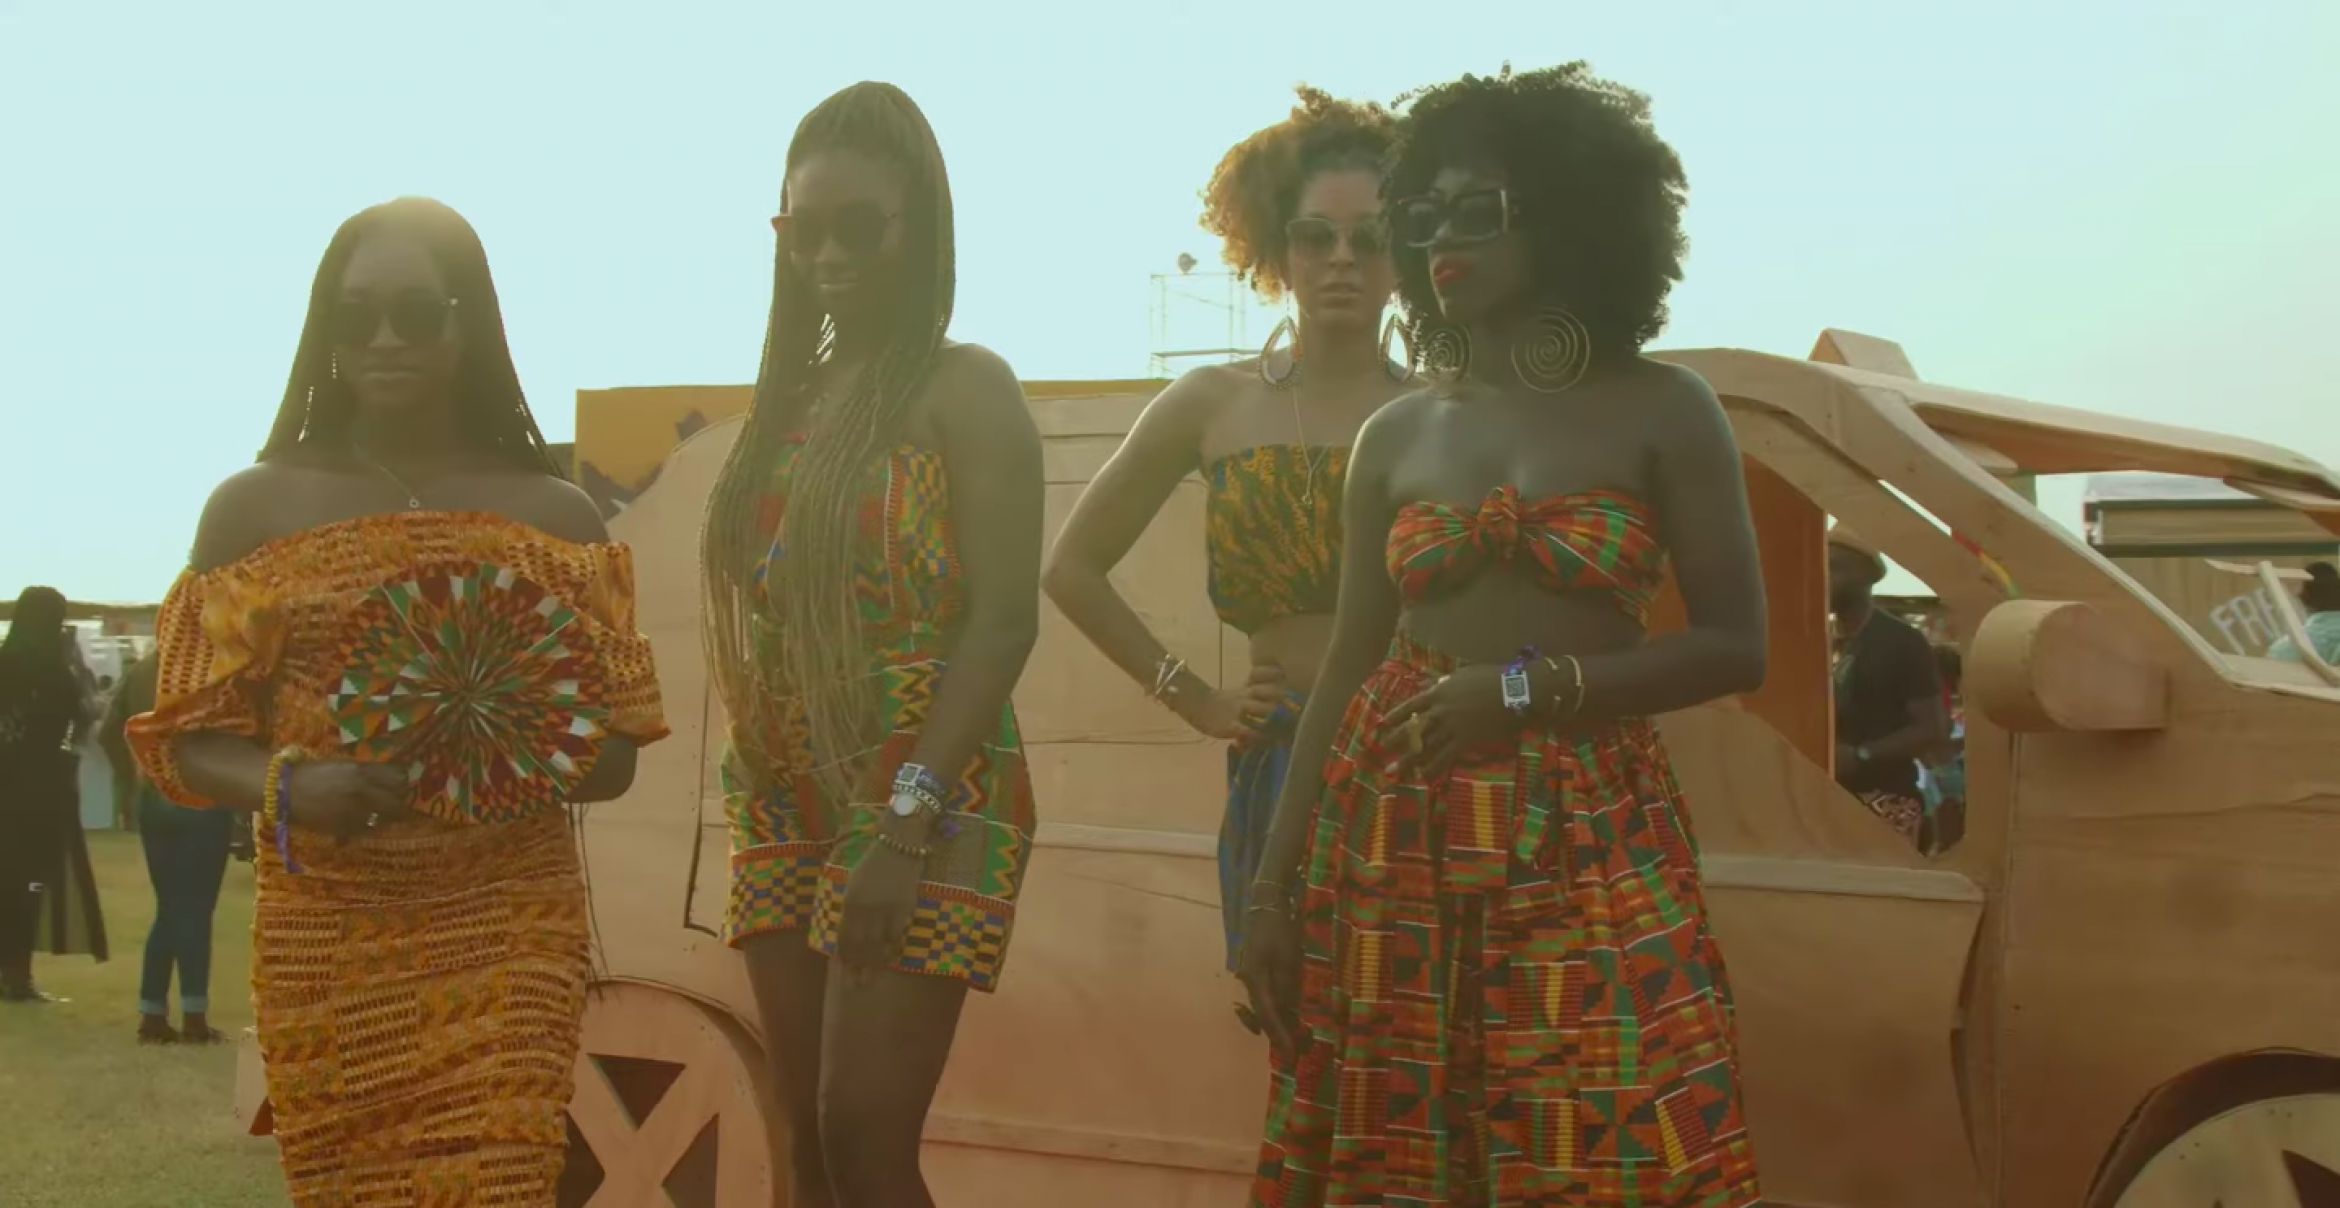 Coachella verklagt Afrochella wegen Verletzung der Markenrechte